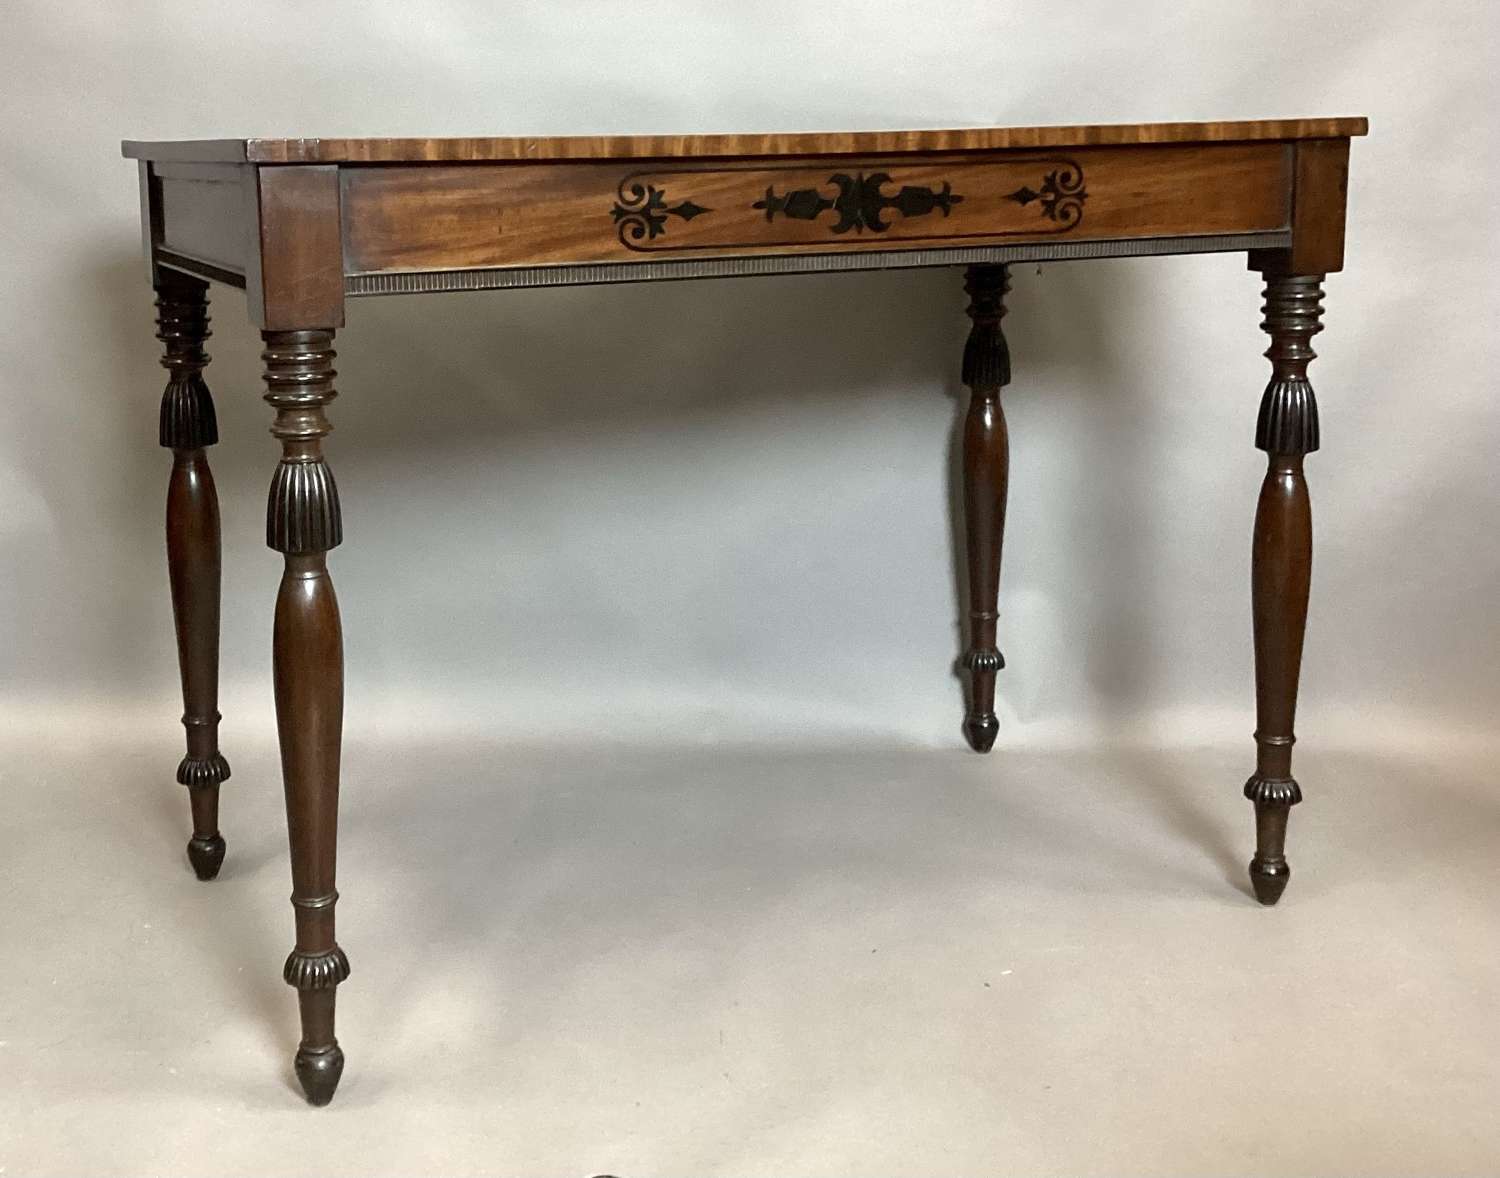 Stylish Regency mahogany and ebony side table / console table